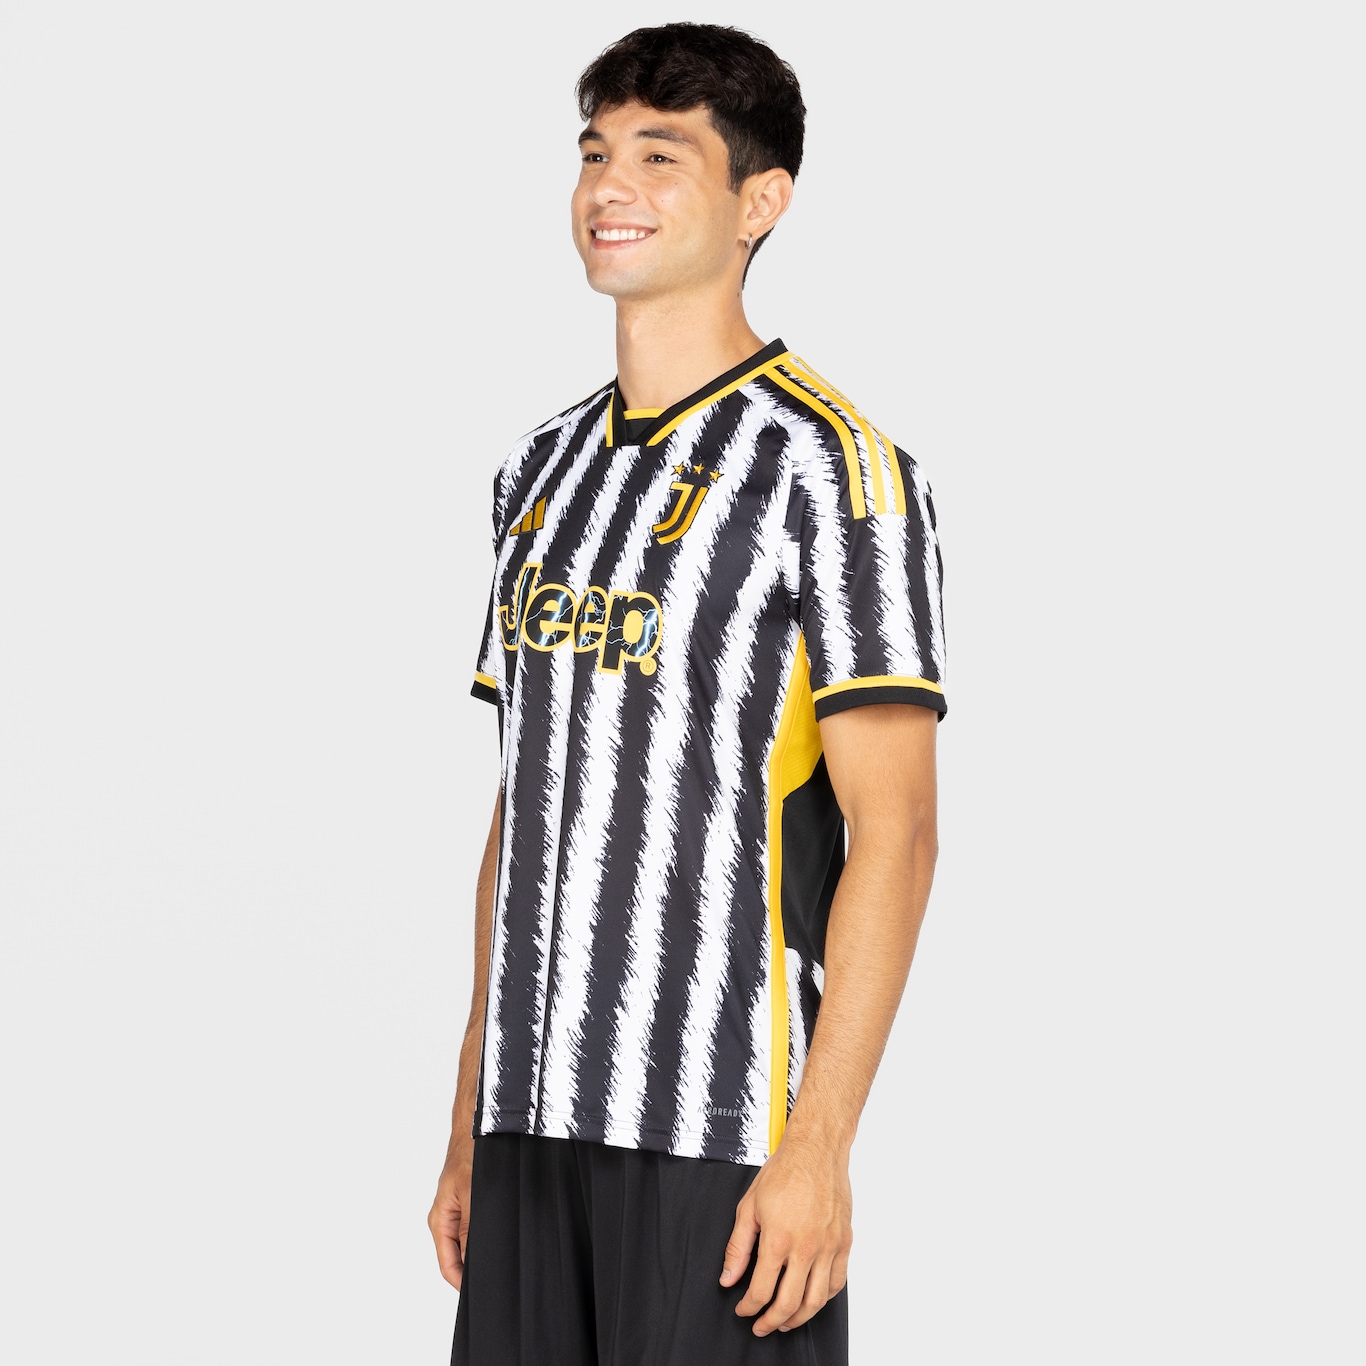 Camisa do Juventus I 23 adidas Masculina Torcedor - Foto 4